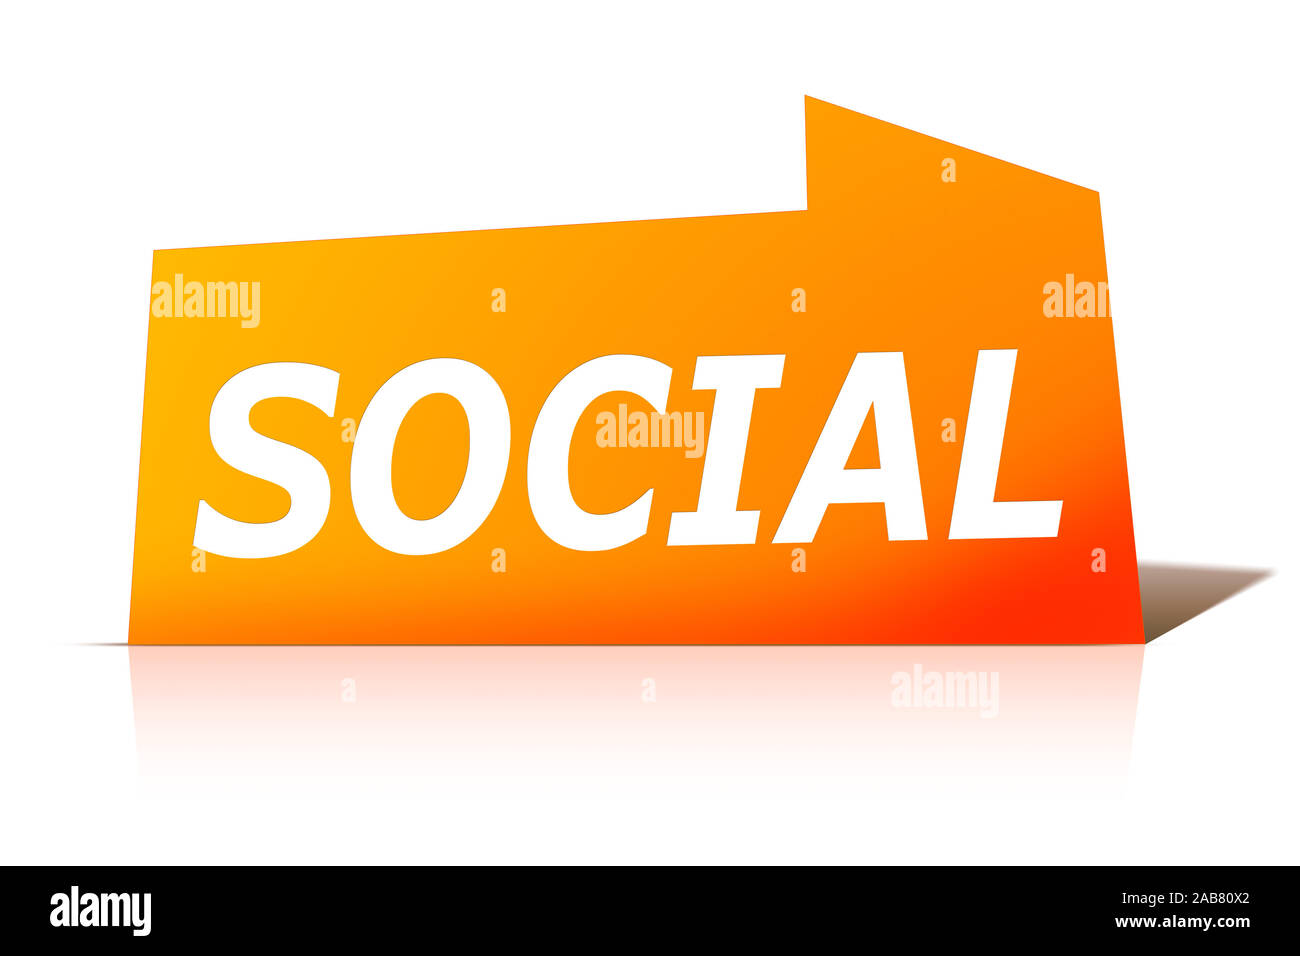 Ein oranges Etikett vor weissem Hintergrund mit der Aufschrift: "SOCIAL" Stock Photo